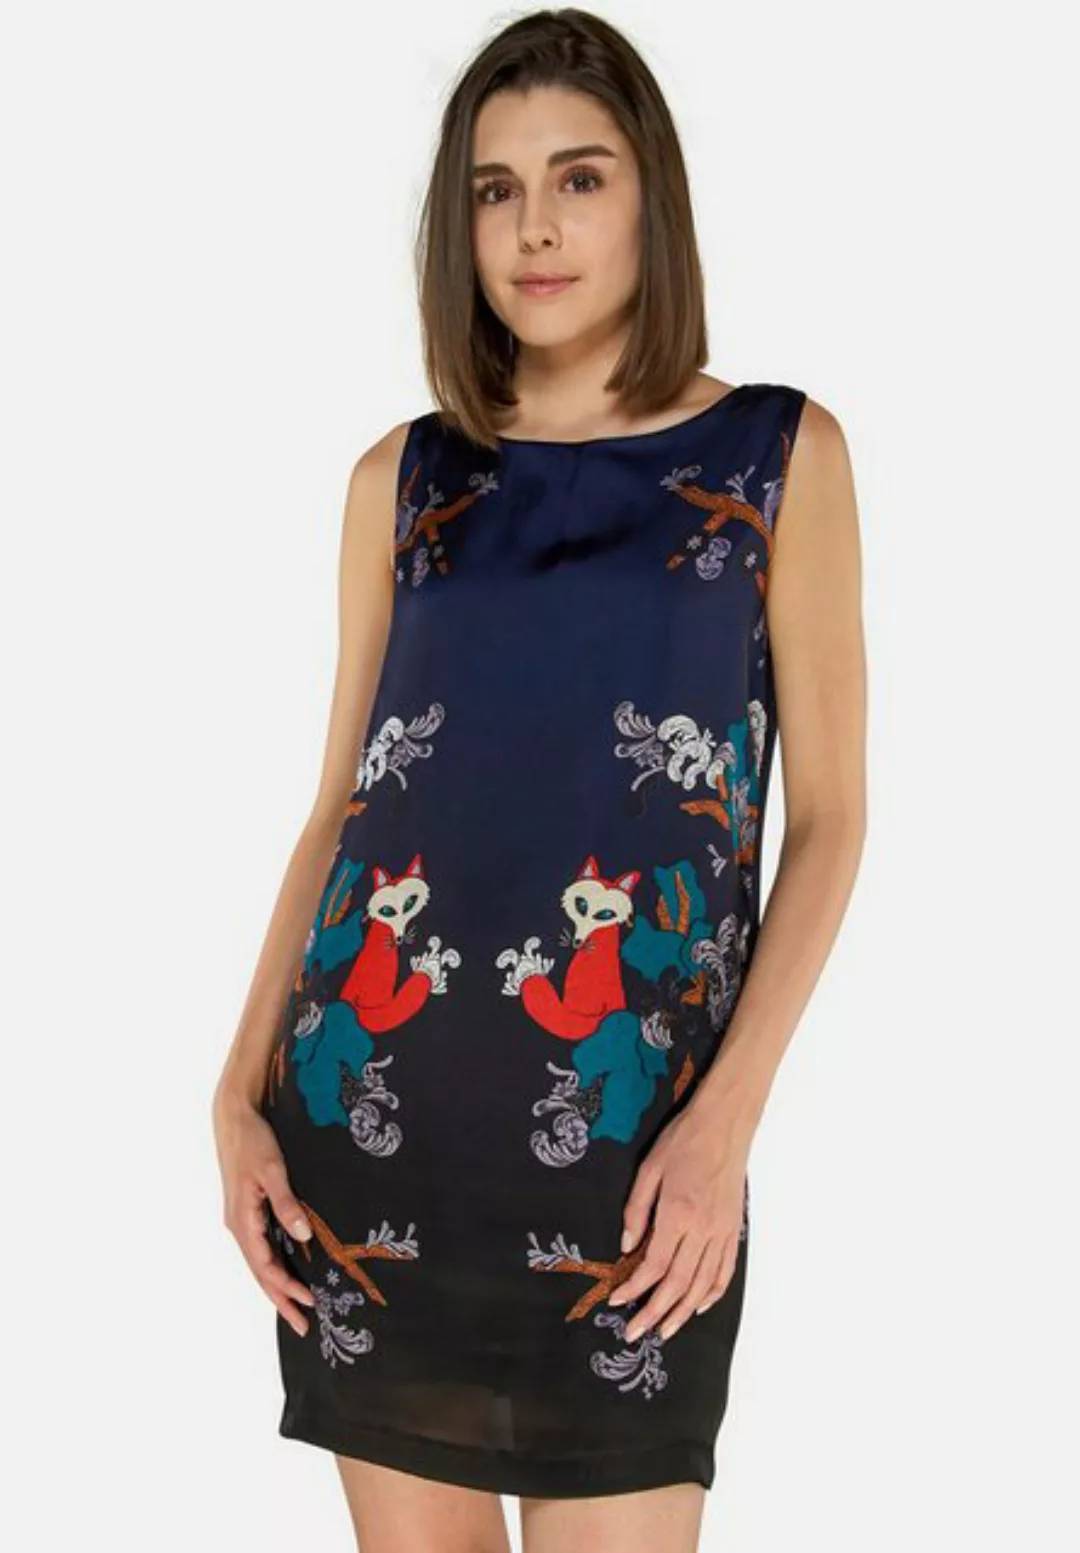 Tooche Etuikleid Foxy Elegantes Kleid mit Foxy-Print günstig online kaufen